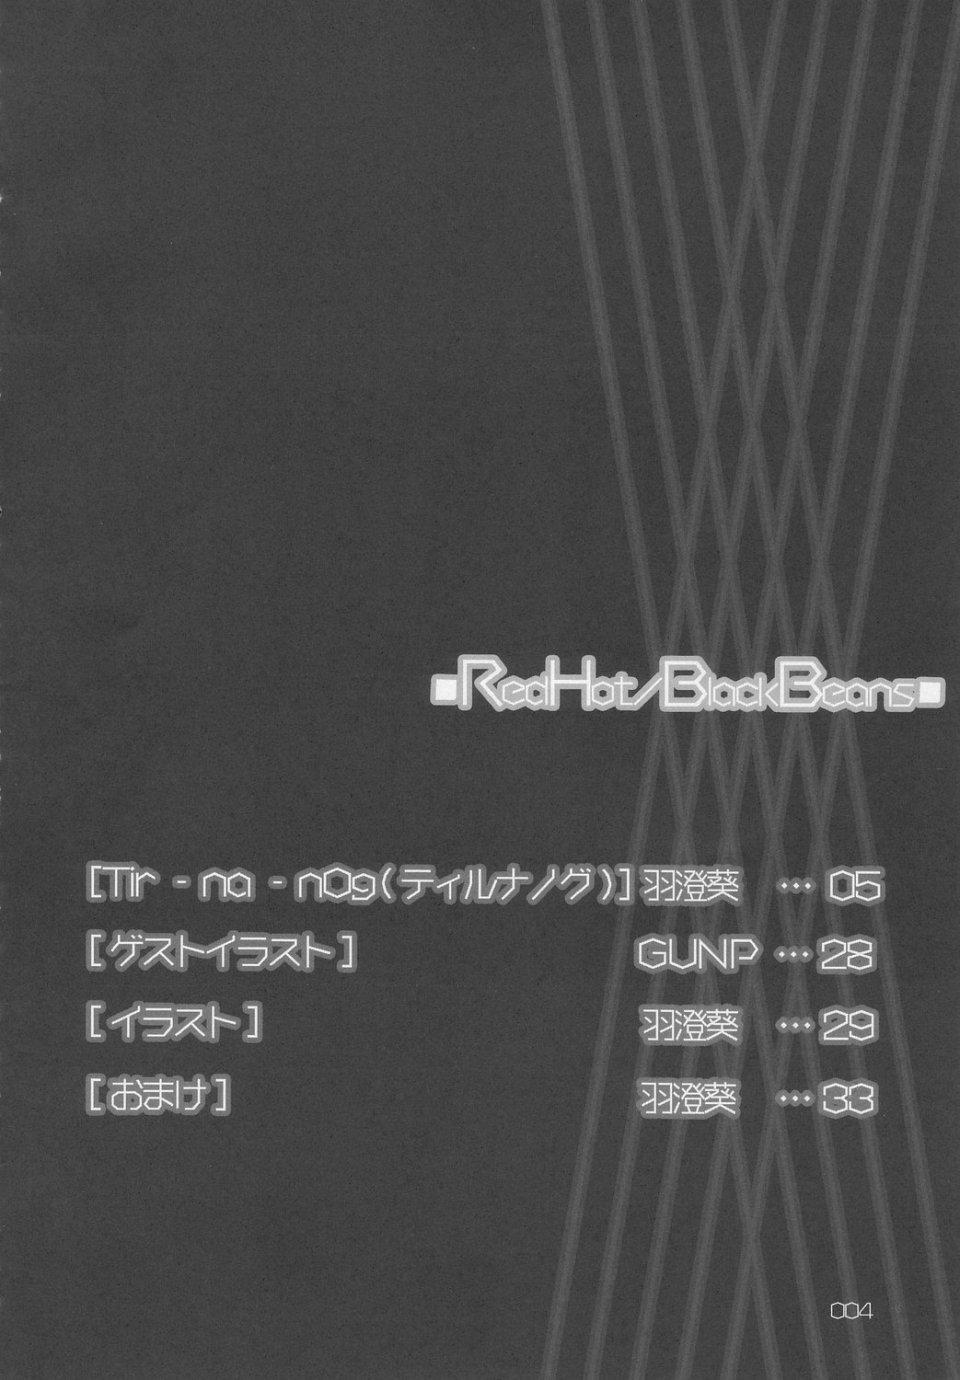 RedHot/BlackBeans 2